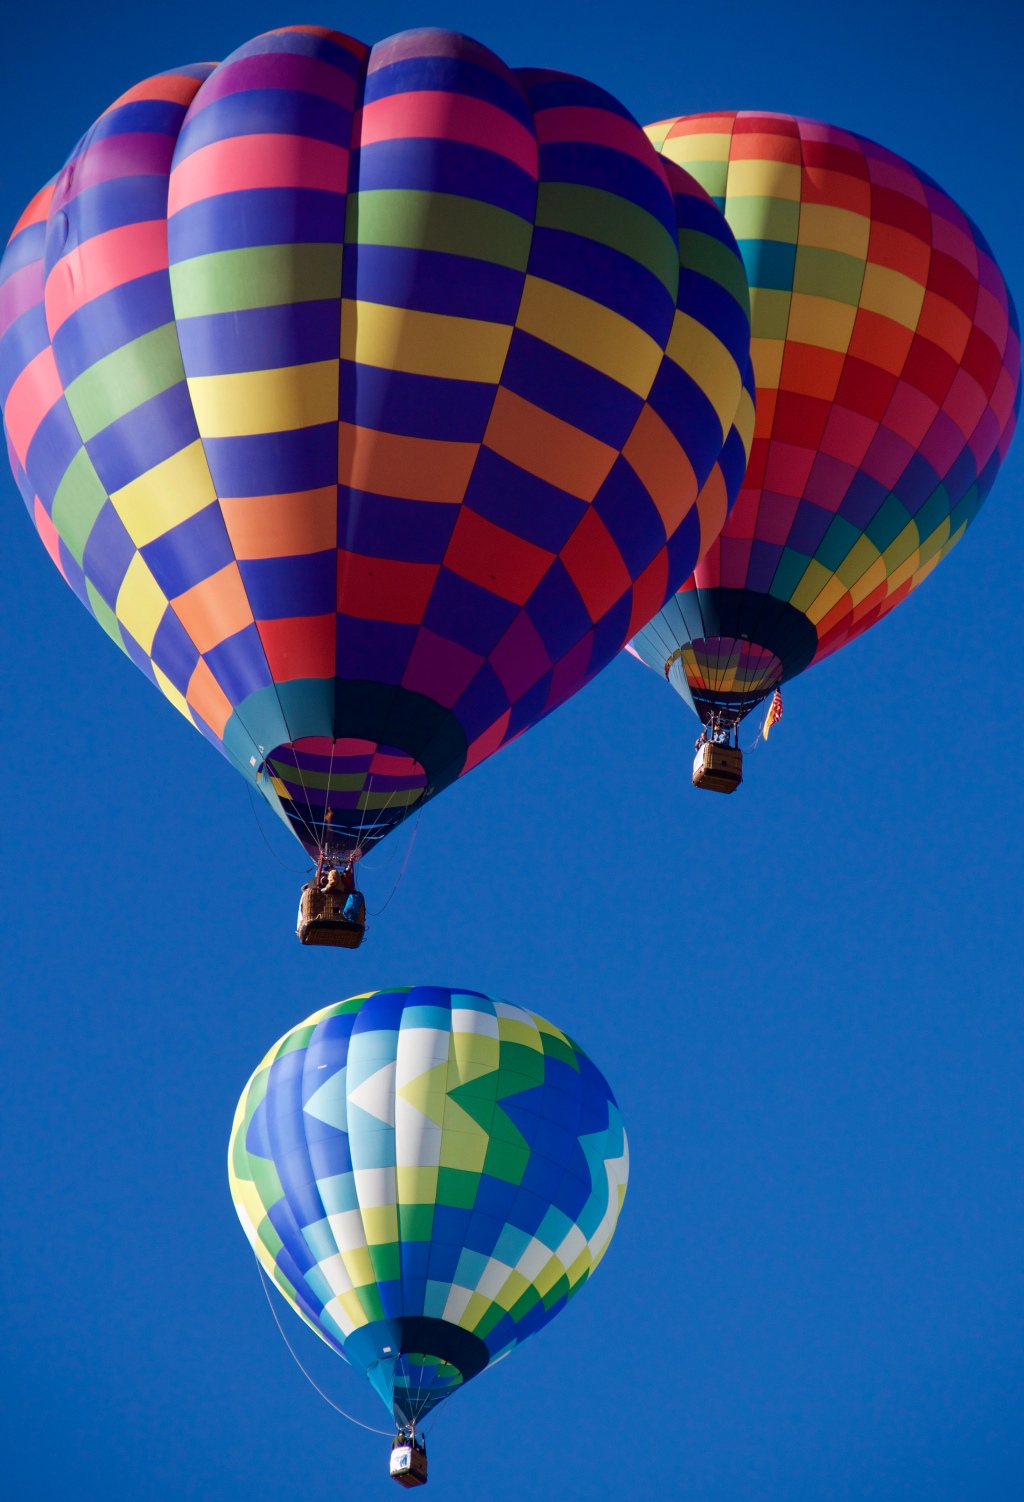 three hot air balloons lifting off